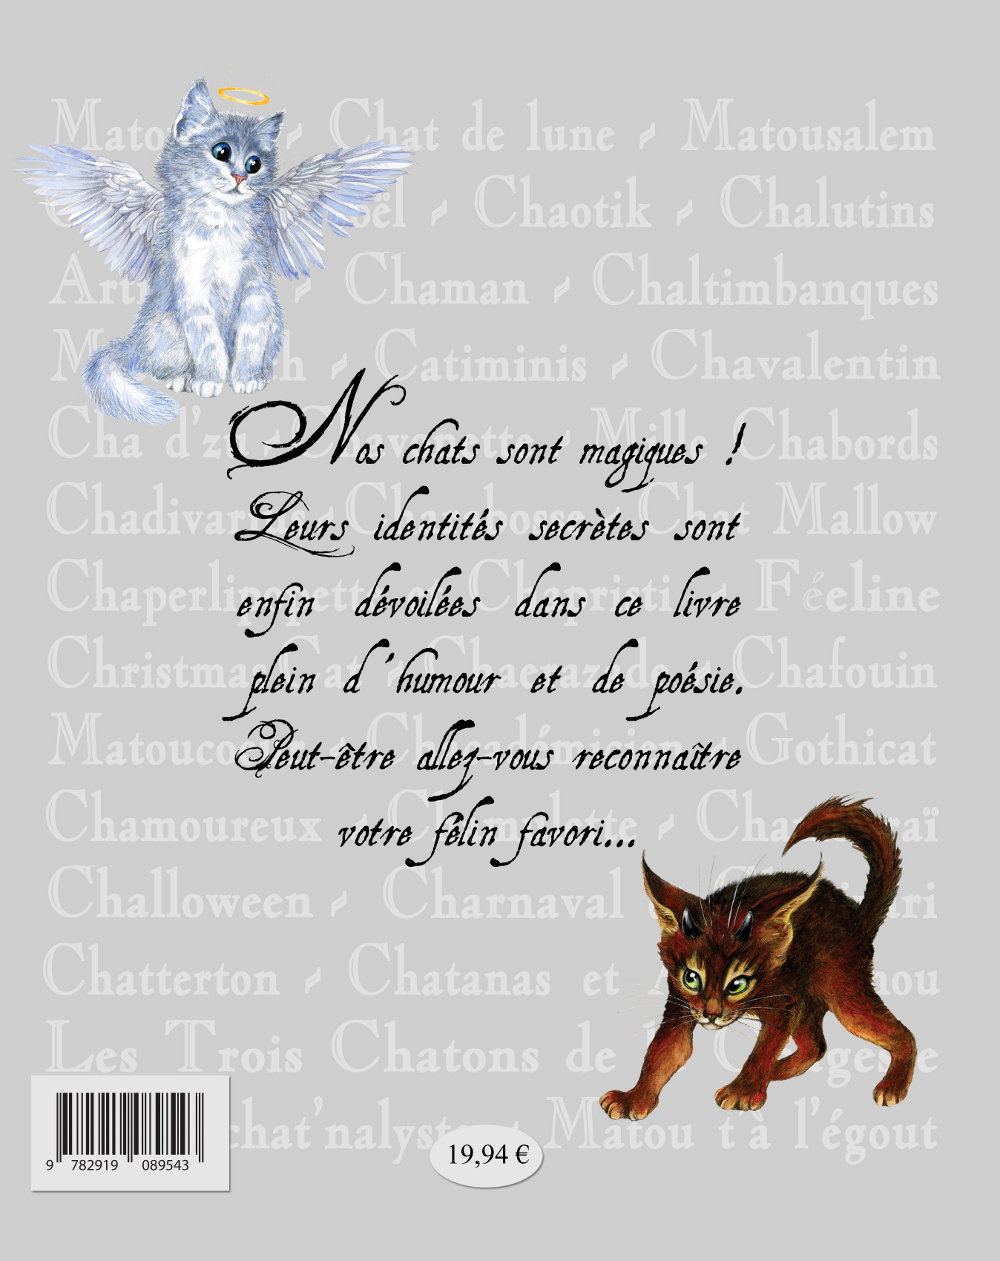 Les Chats Enchantés de S. Pineaux, le livre secret, image de dos